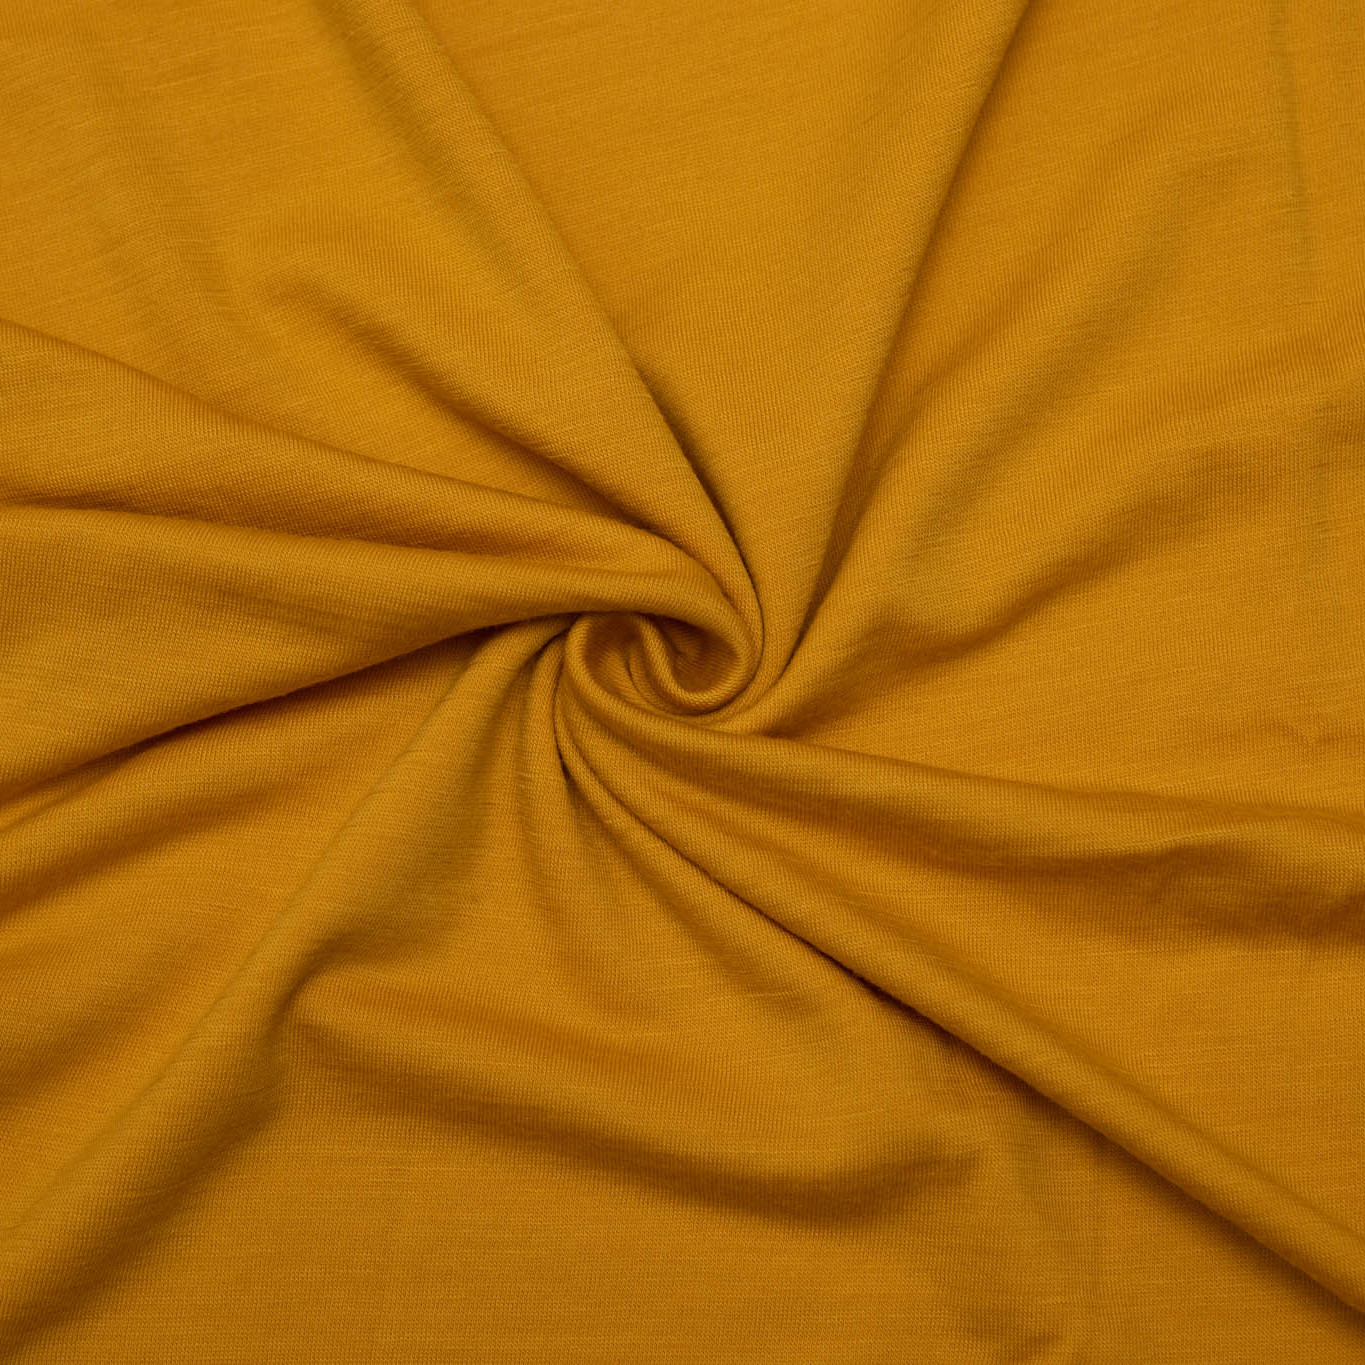 RWS Merino wool jersey - Yellow  - 1/4m